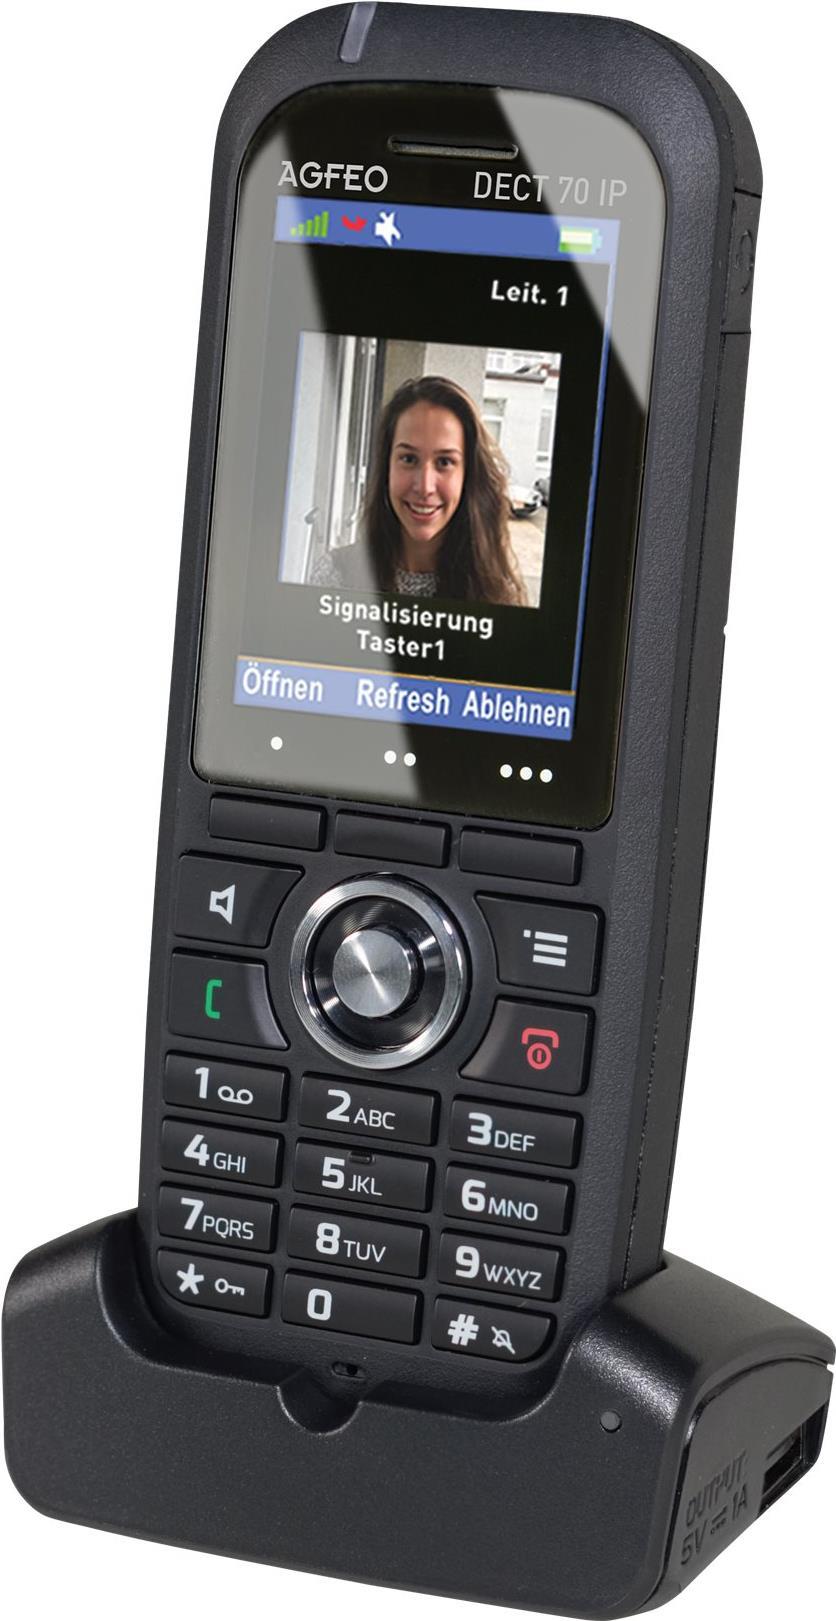 AGFEO DECT 70 IP IP-Telefon Schwarz Wired & Wireless handset TFT (6101576)